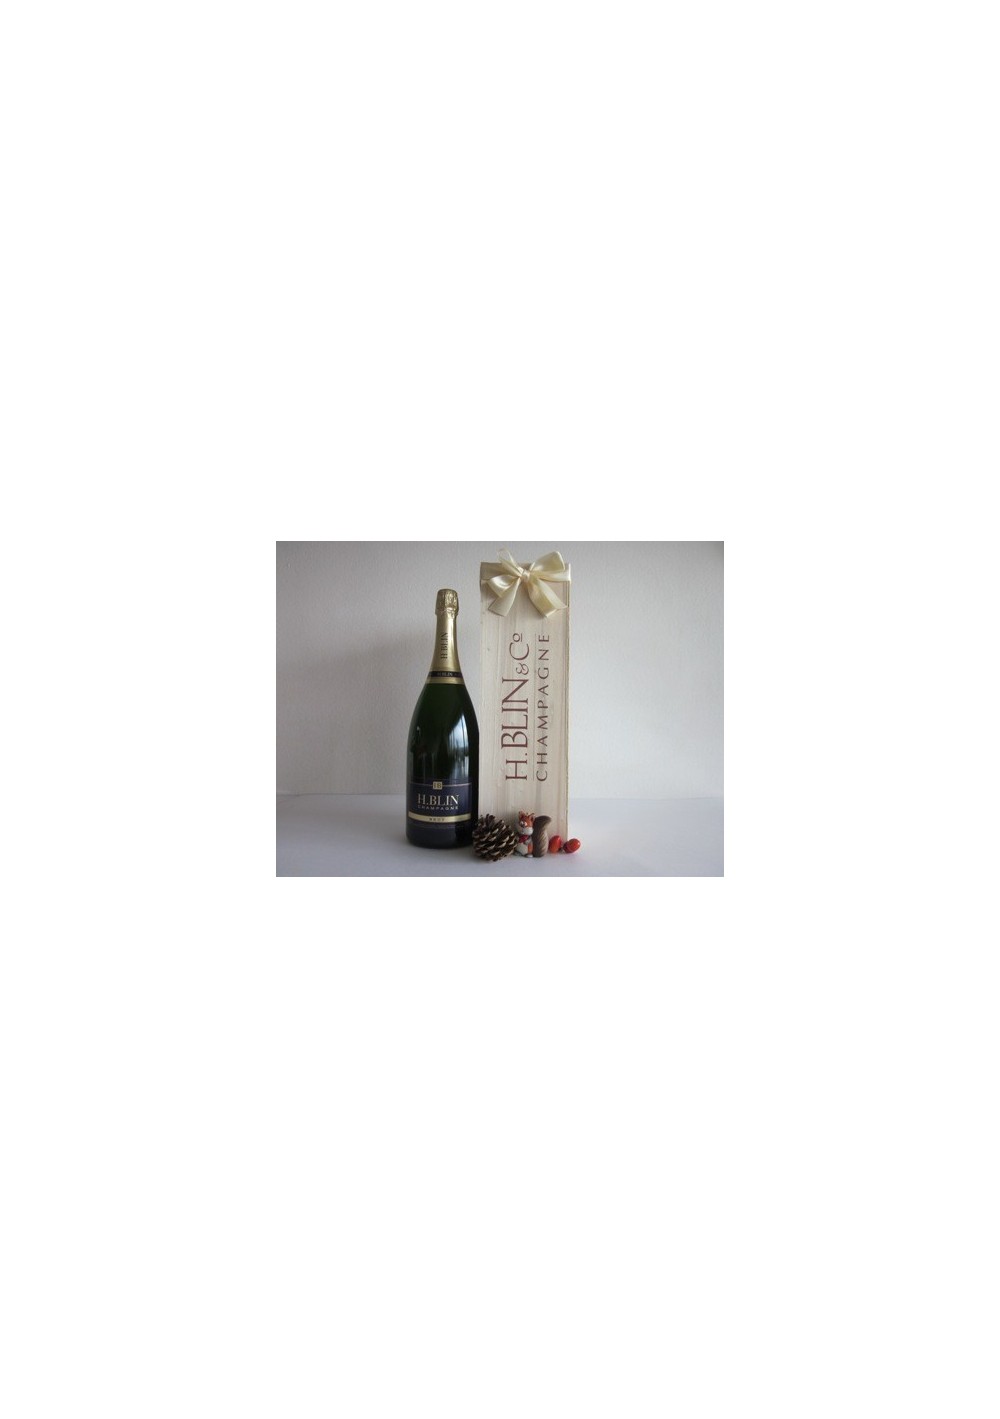 Matthusalem - champagne H. BLIN - Brut